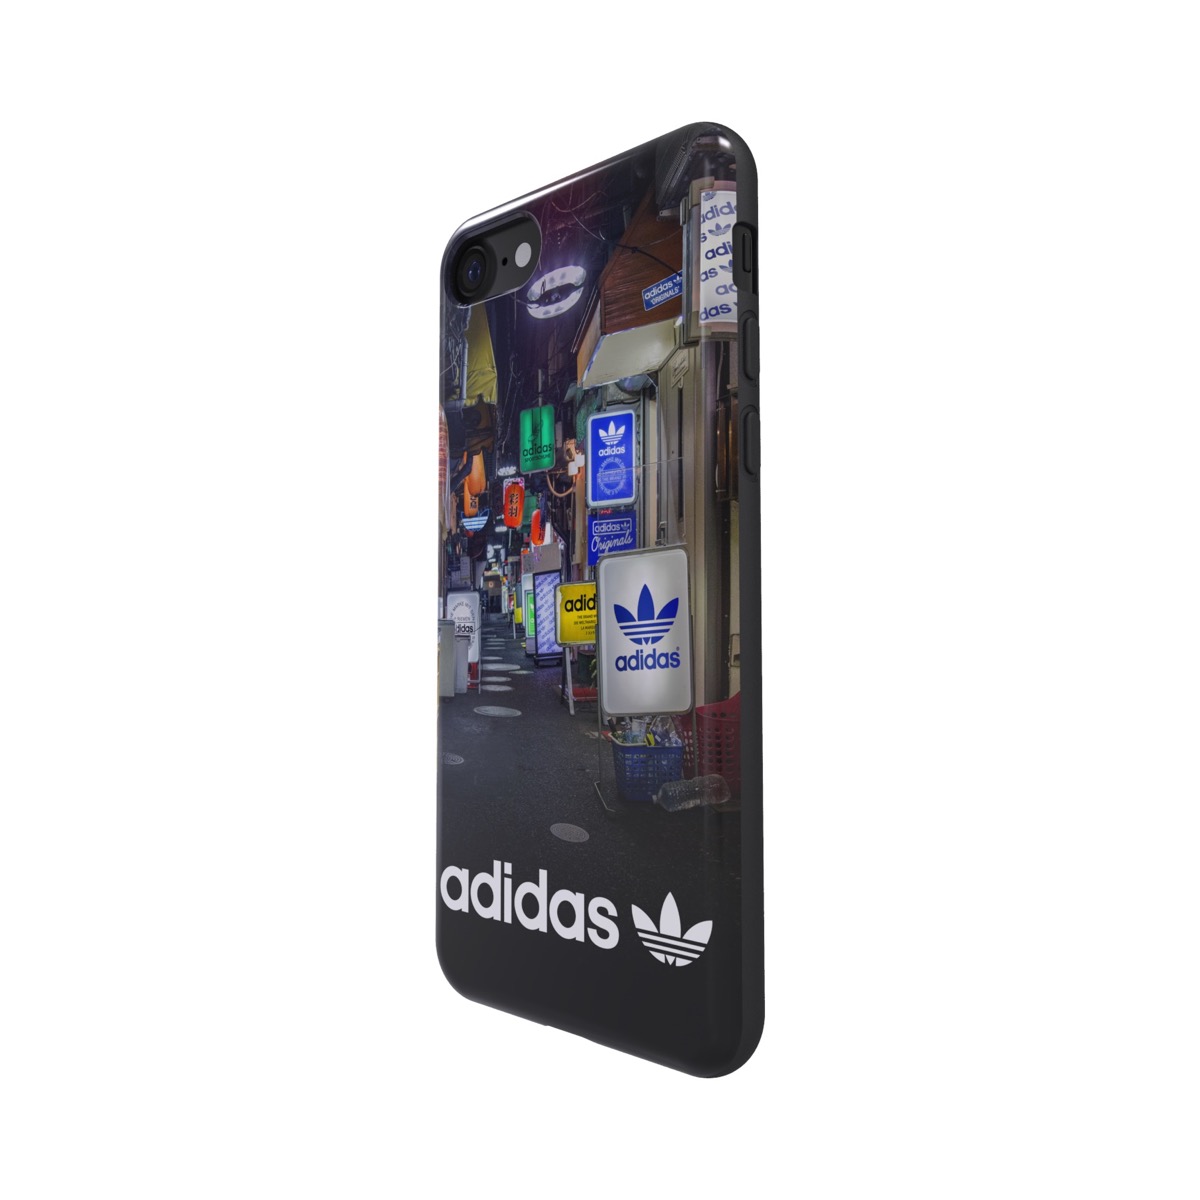 Adidas Originals Tpu Iphone 7 Mens Graphic 海外輸入ブランド商品 株式会社エム エス シー